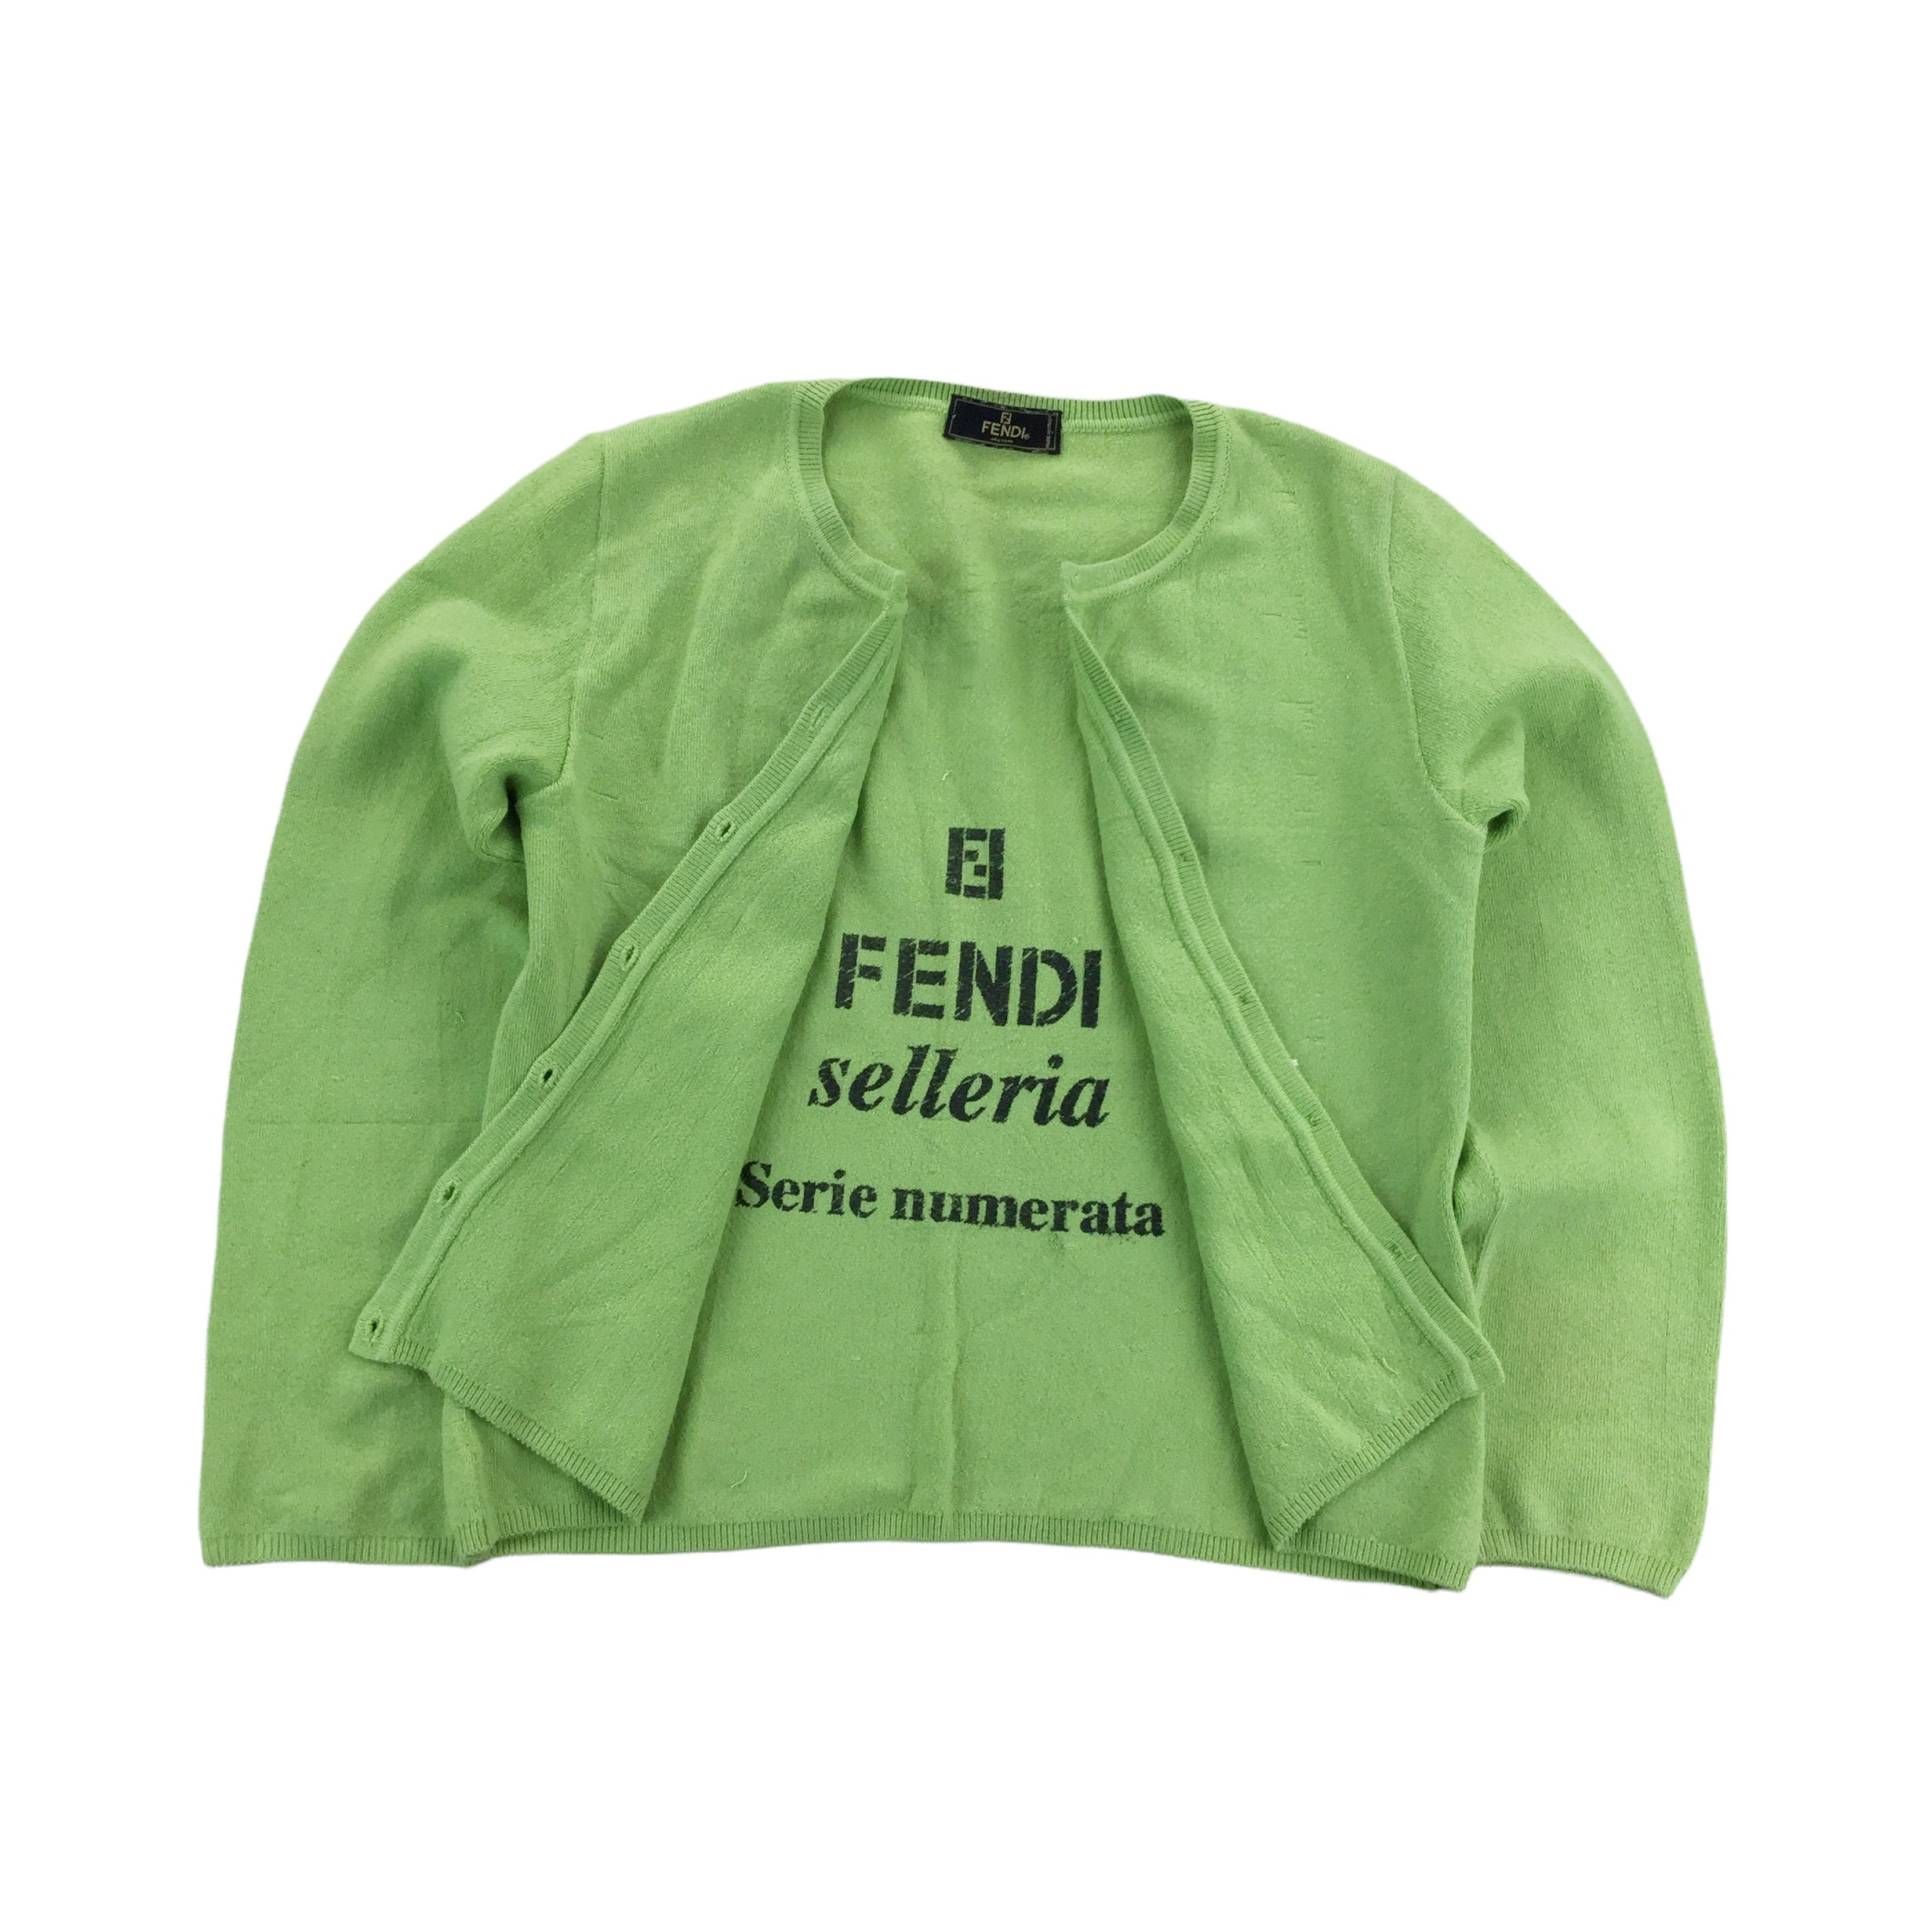 Vintage Fendi Selleria Serie Numerata Button Sweatshirt - Frauen/M Größe Mantel Weibliche Jacke Gebraucht von aloisstudio